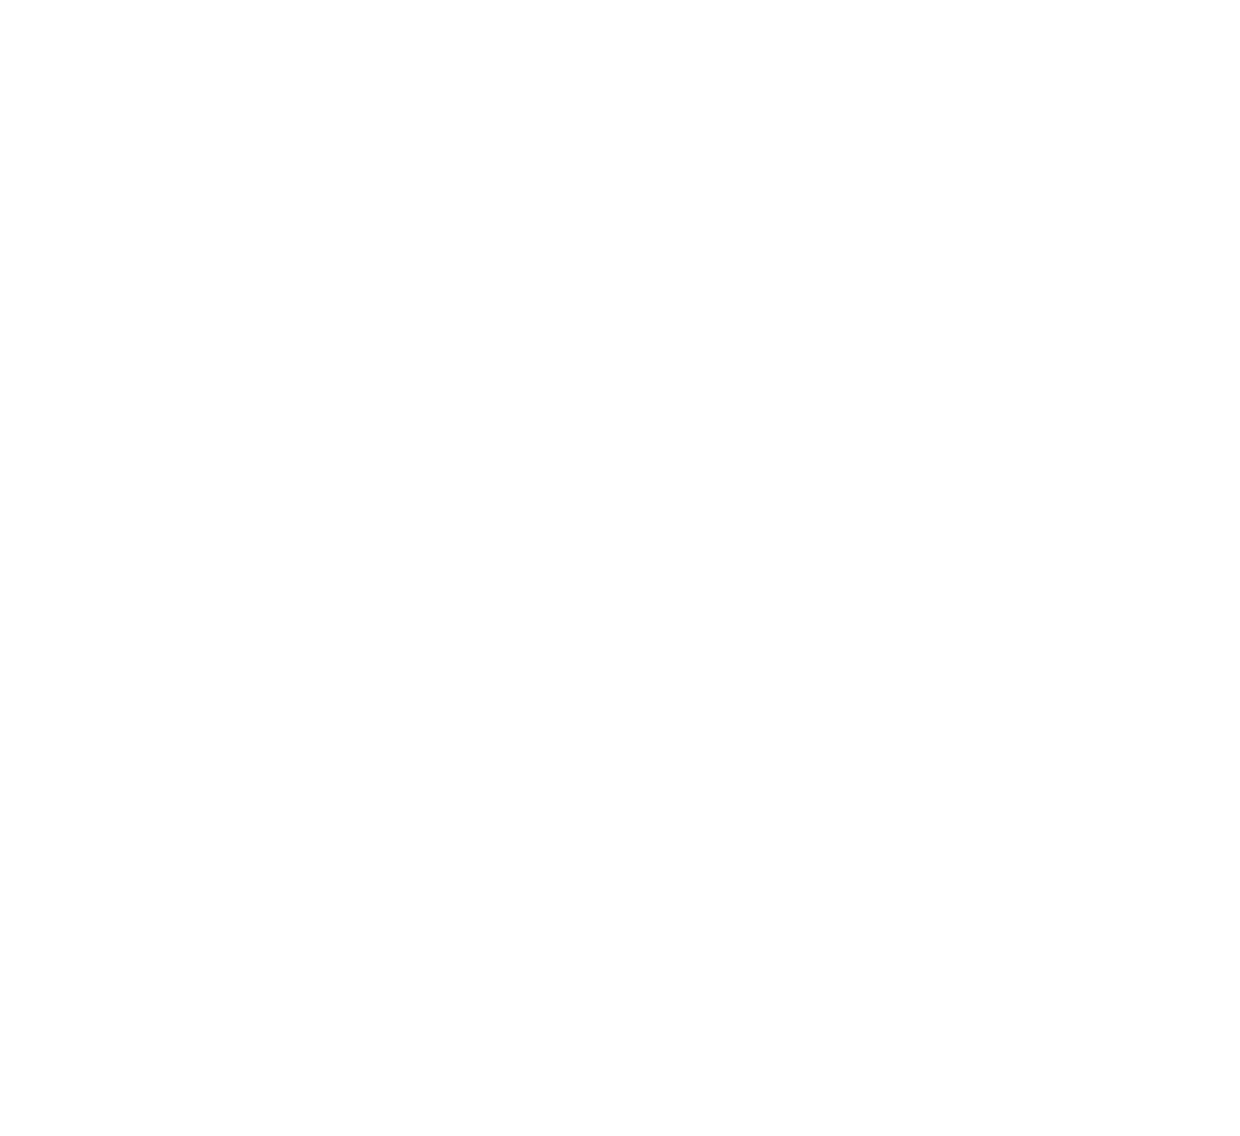 DJ Night Mixer